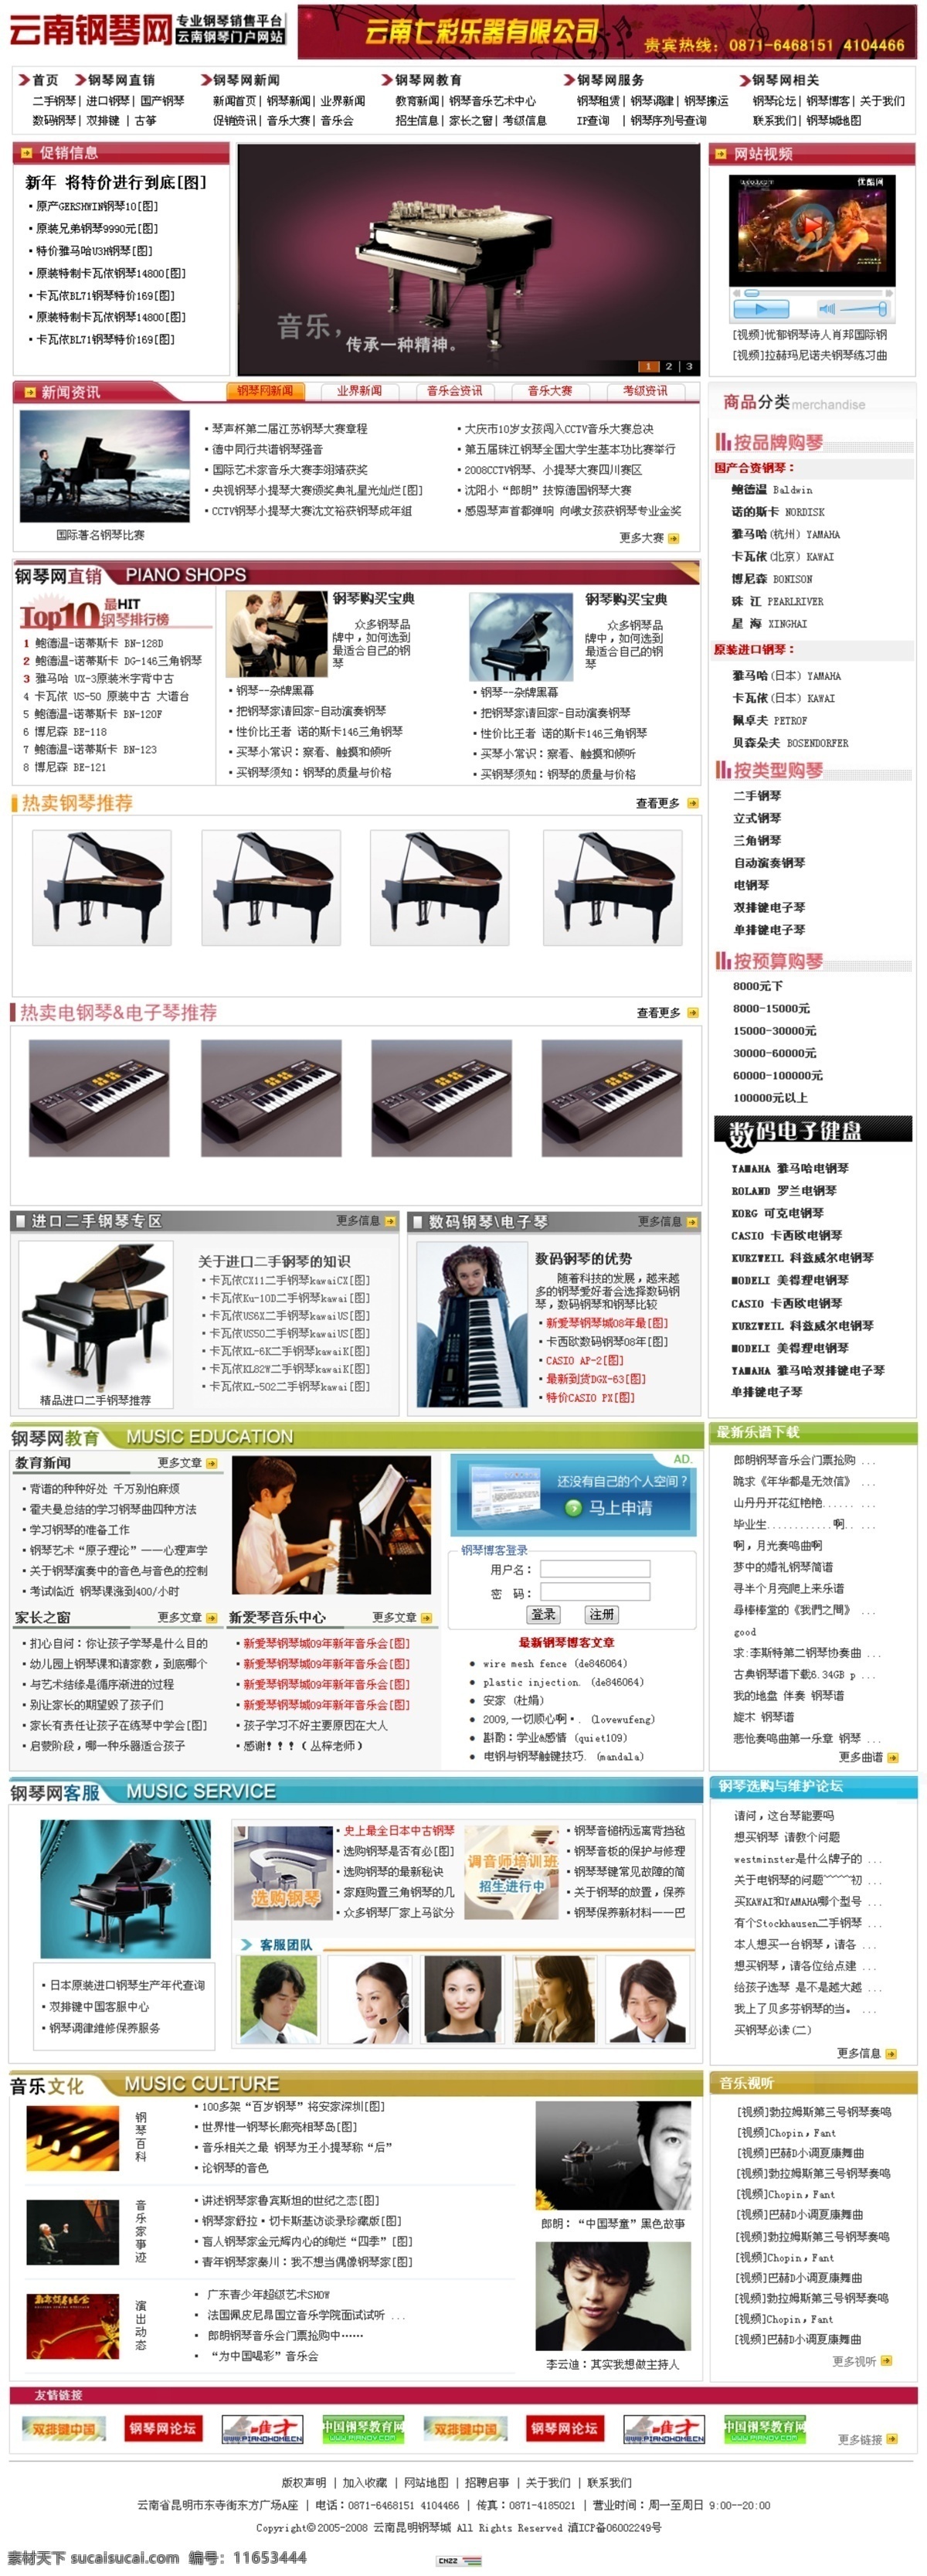 钢琴 门户 网站首页 模板 钢琴培训 门户网站 网页模板 源文件库 中文模版 钢琴销售 钢琴知识 psd源文件